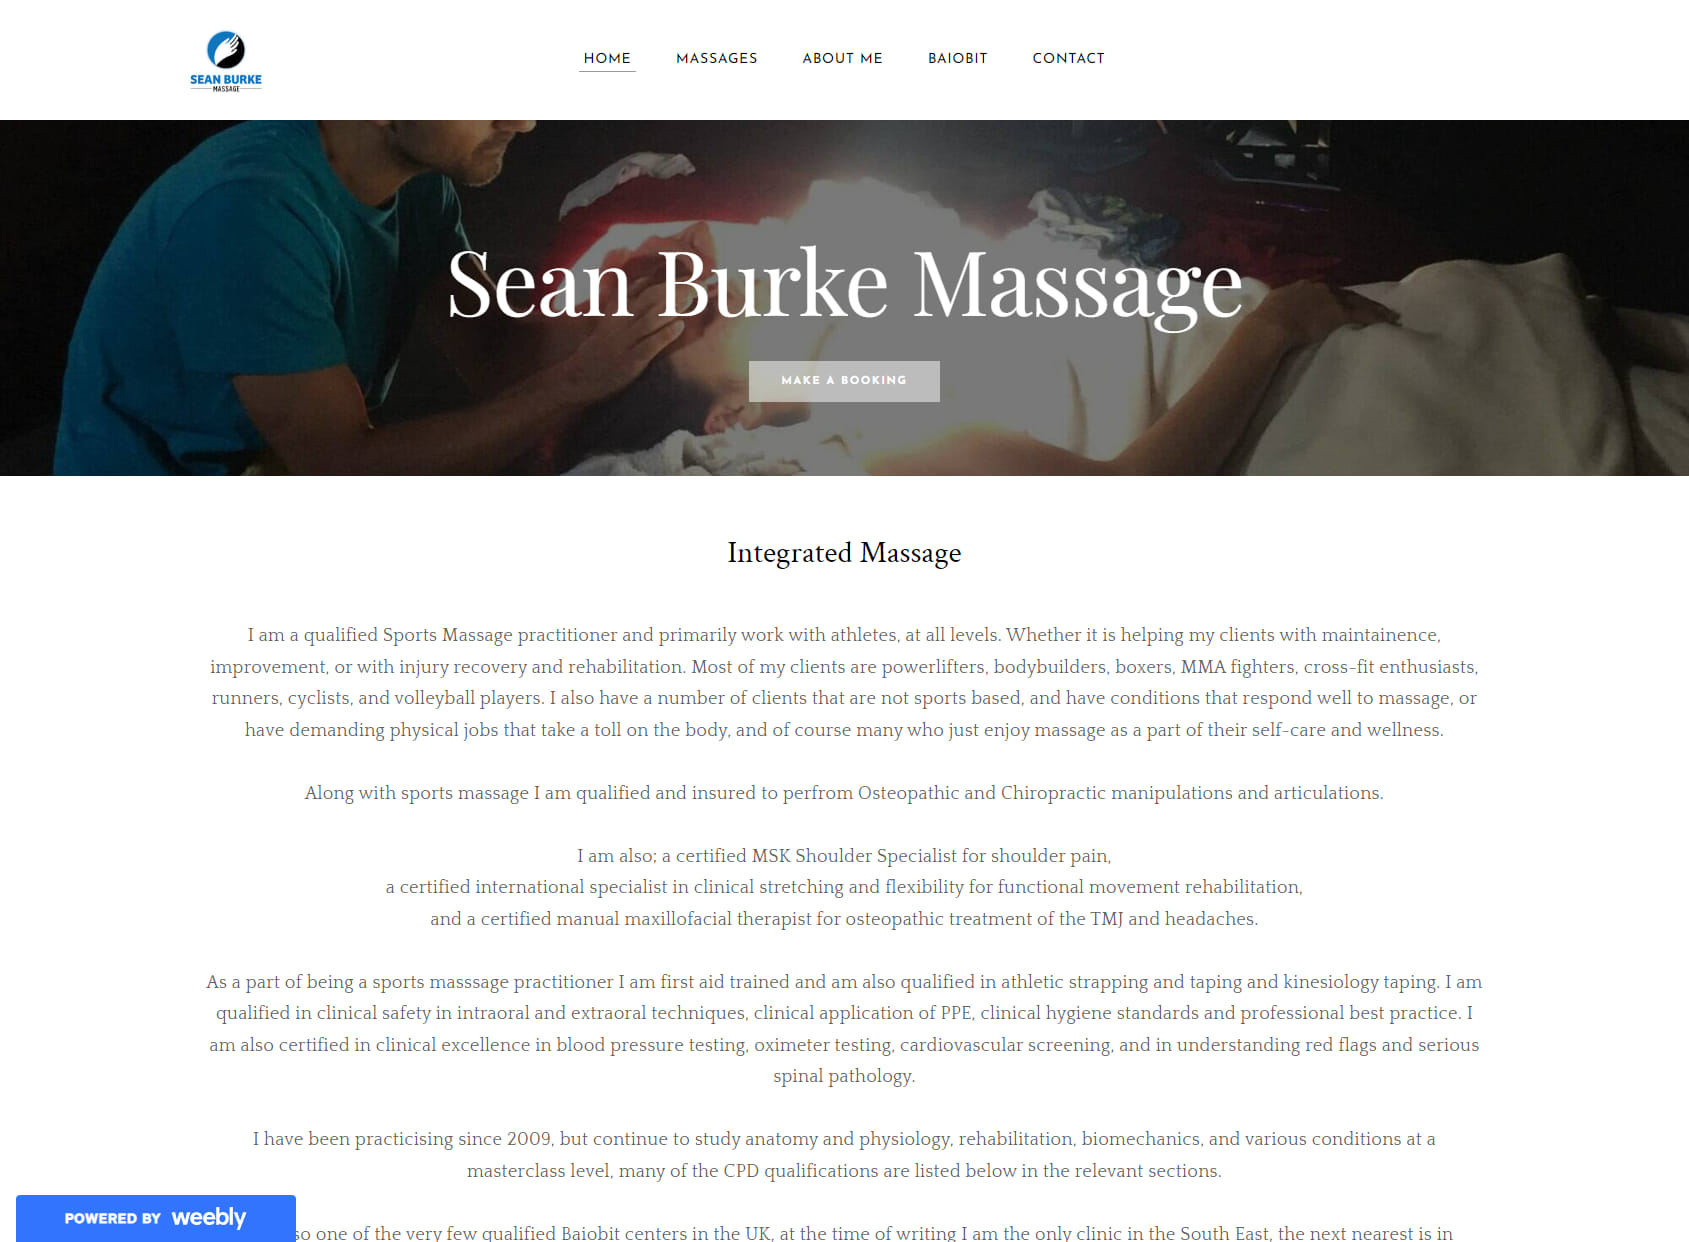 Sean Burke Massage